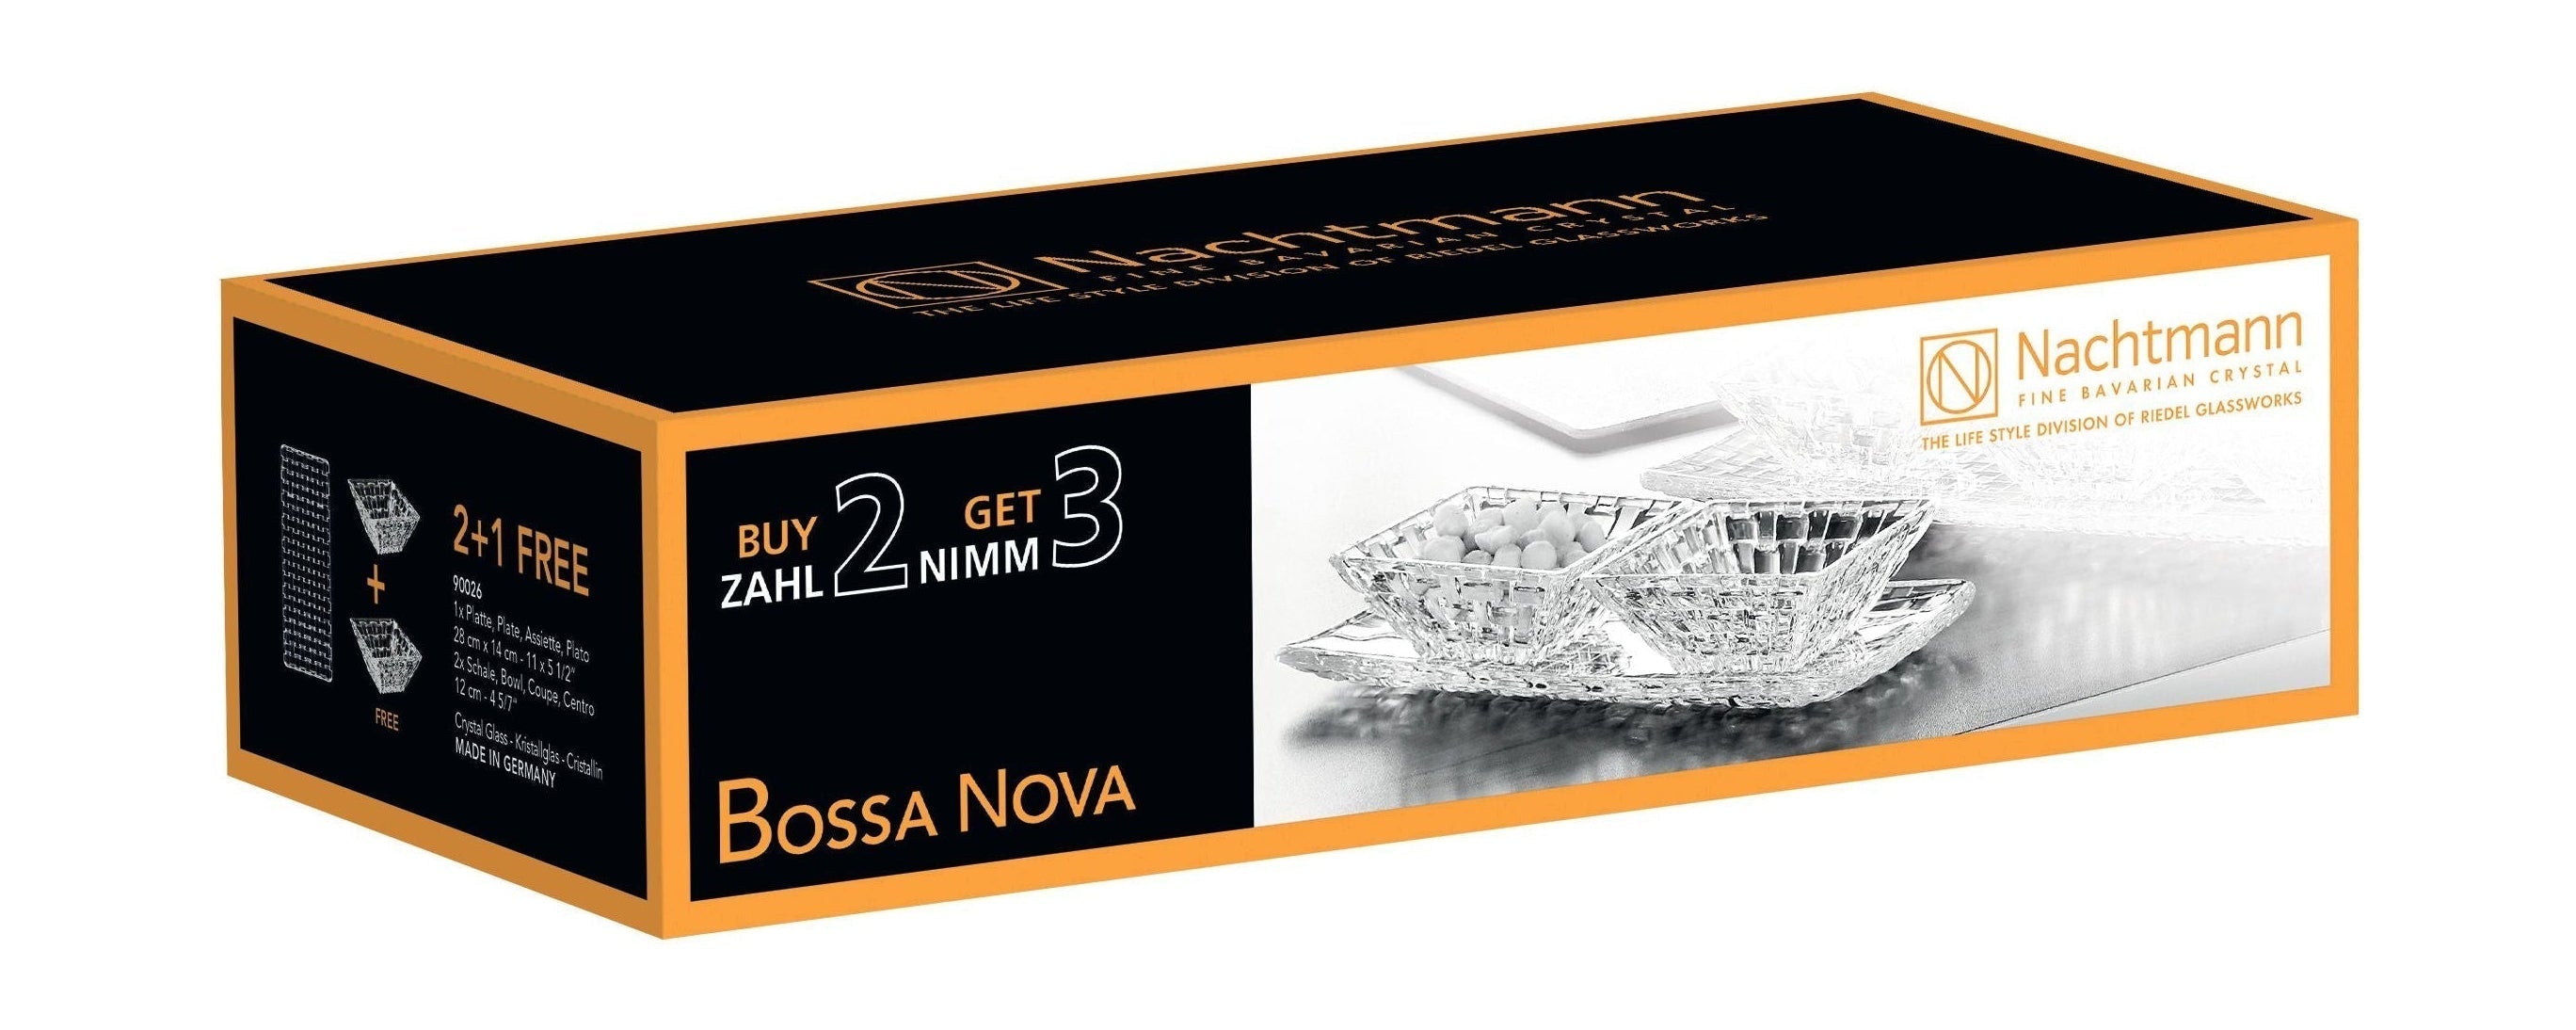 Nachtmann Bossa Nova Crystal Bowls Zestaw Advantage, zestaw 3